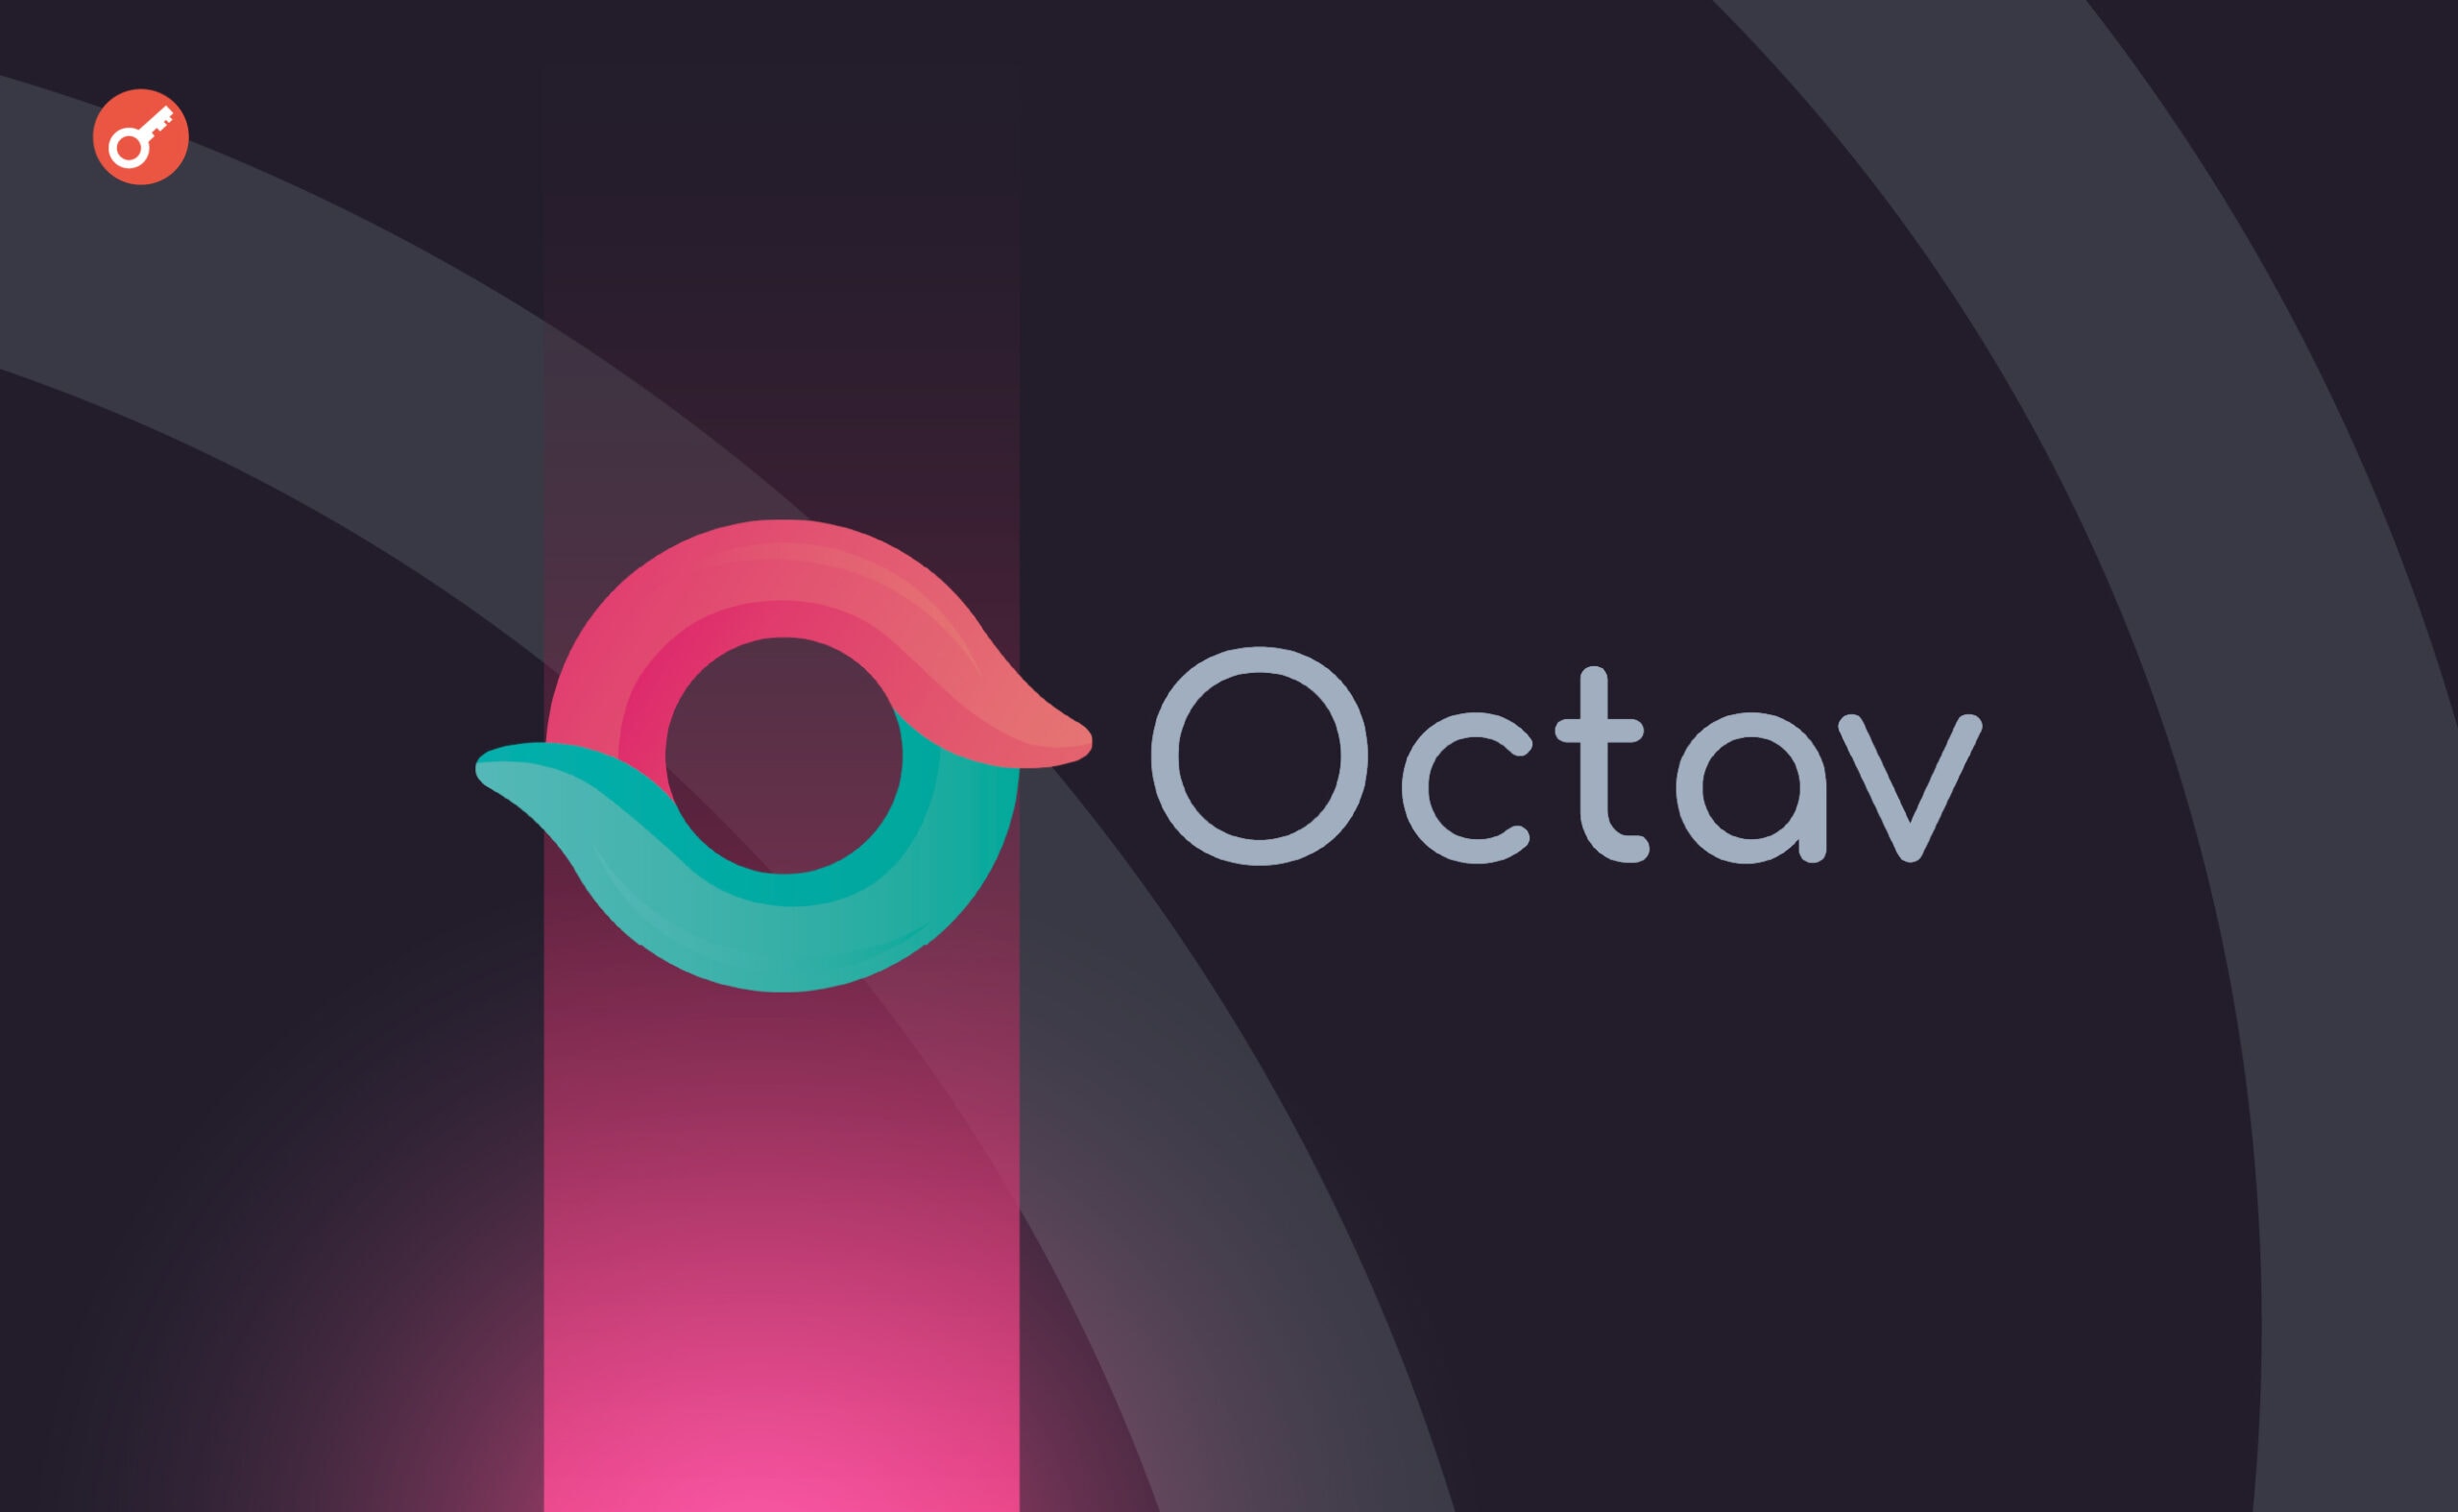 Платформа Octav залучила $2,65 млн інвестицій. Головний колаж новини.